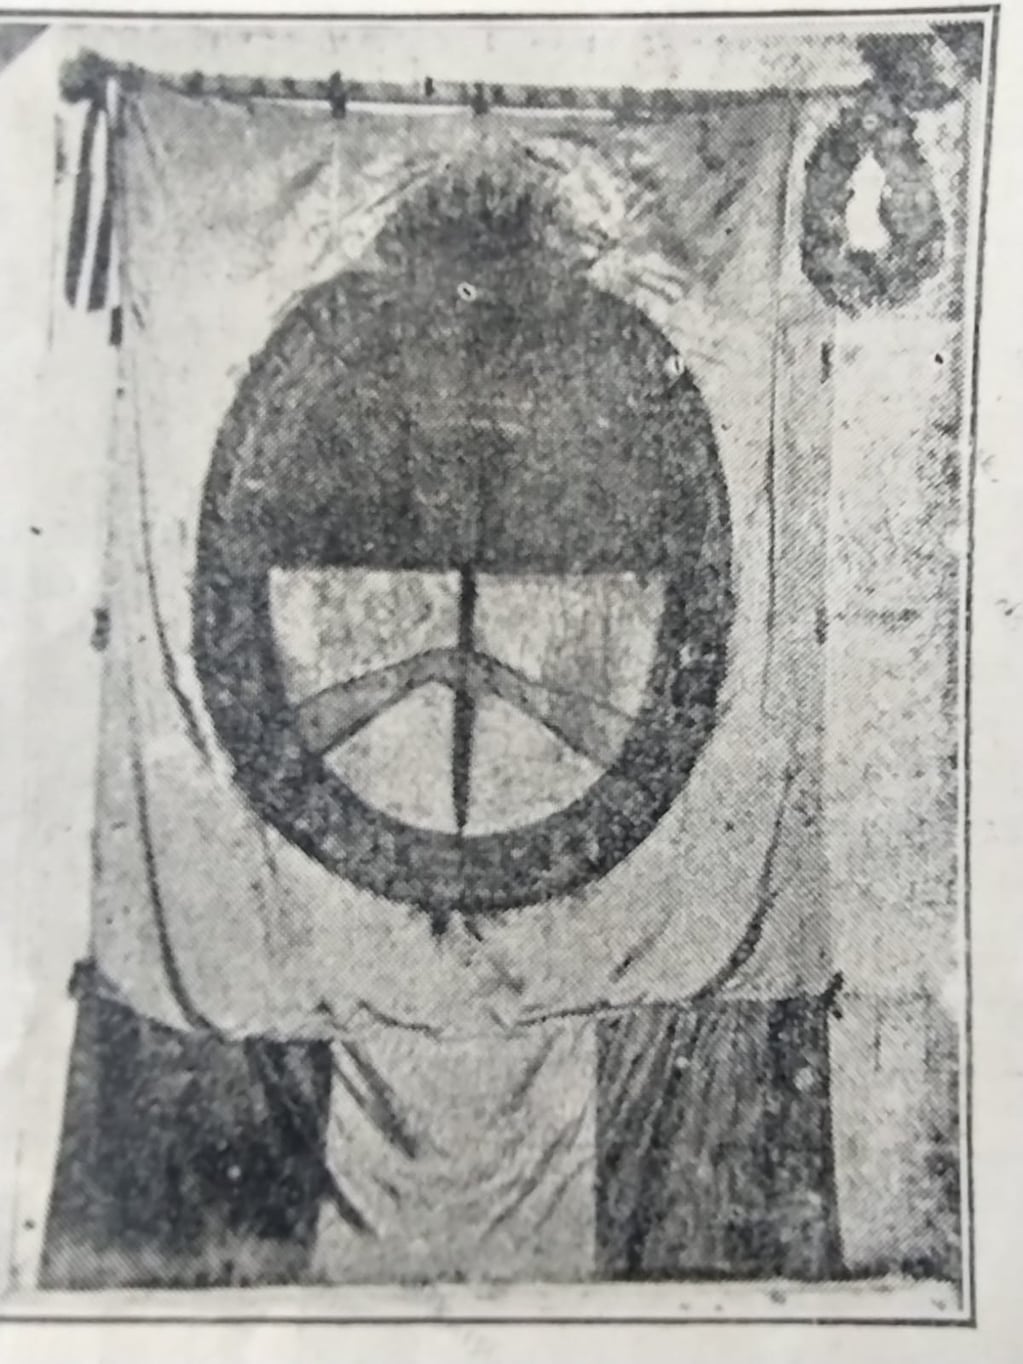 Única fotografía existente de cómo era la Bandera donada por Belgrano al pueblo de Jujuy. (Archivo del autor de la nota).